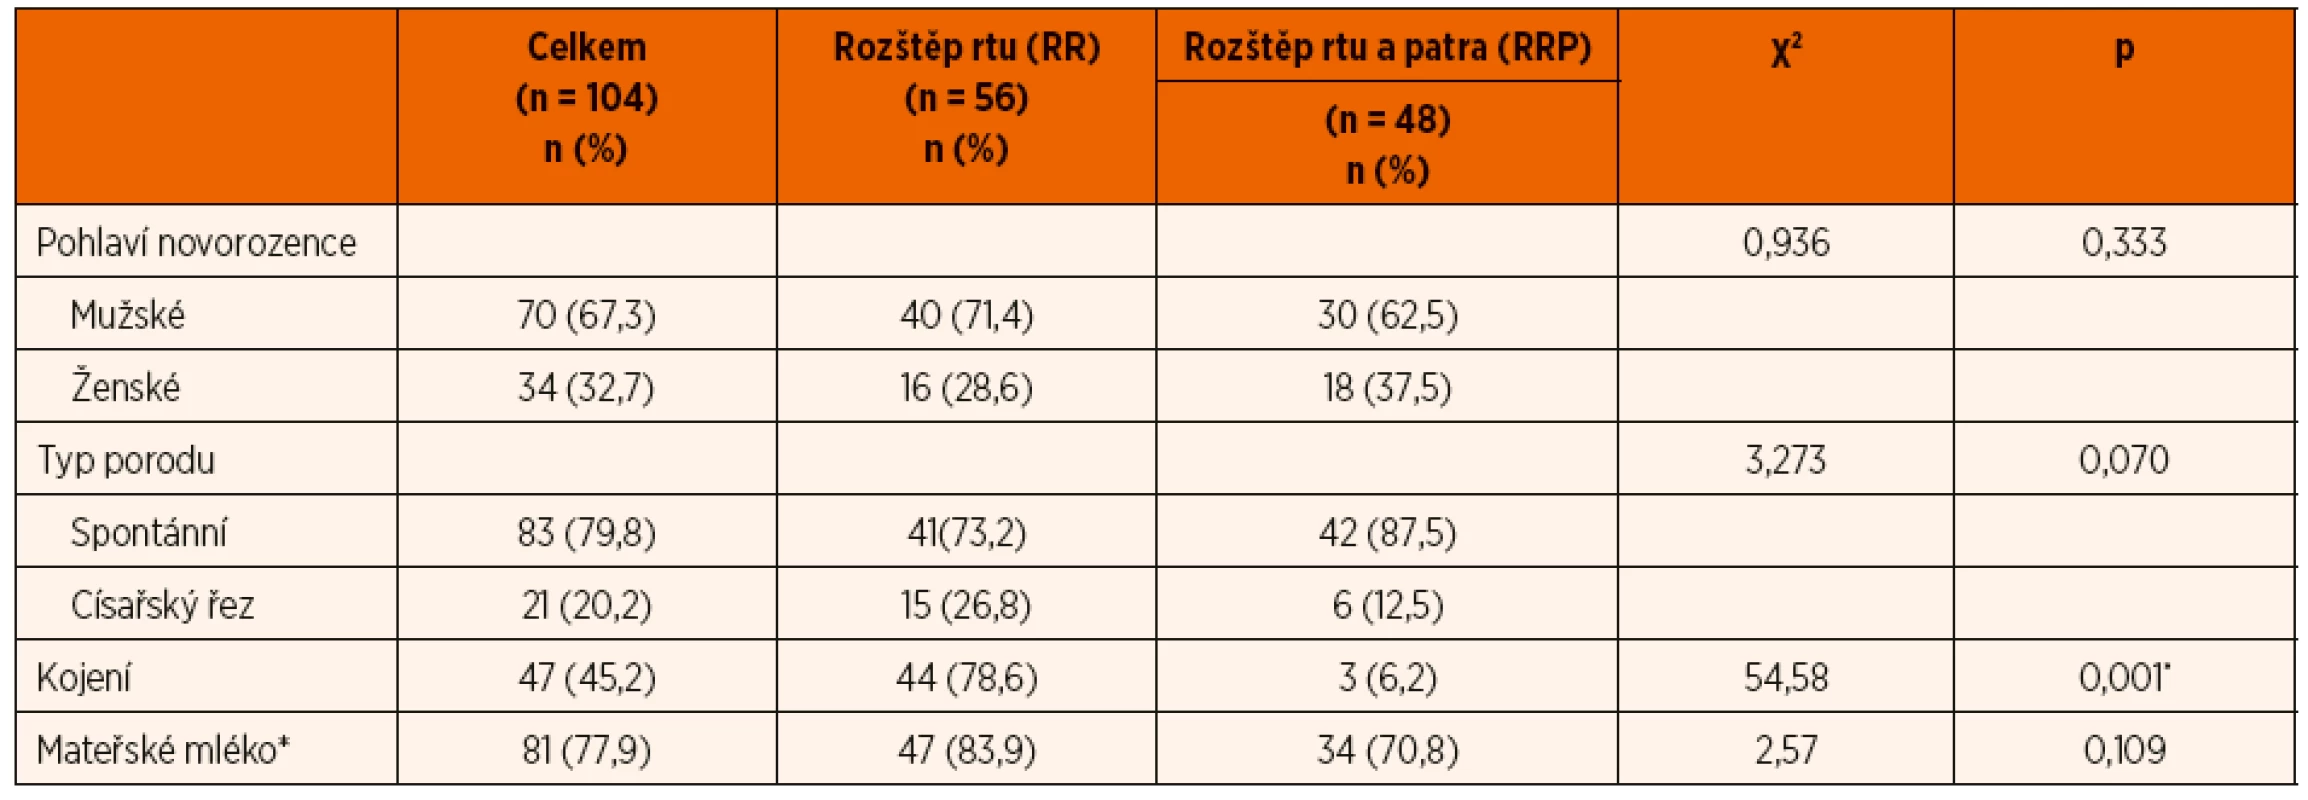 Srovnání demografických dat a údajů o kojení skupiny pacientů s rozštěpem rtu (RR) a s rozštěpem rtu a patra (RRP).